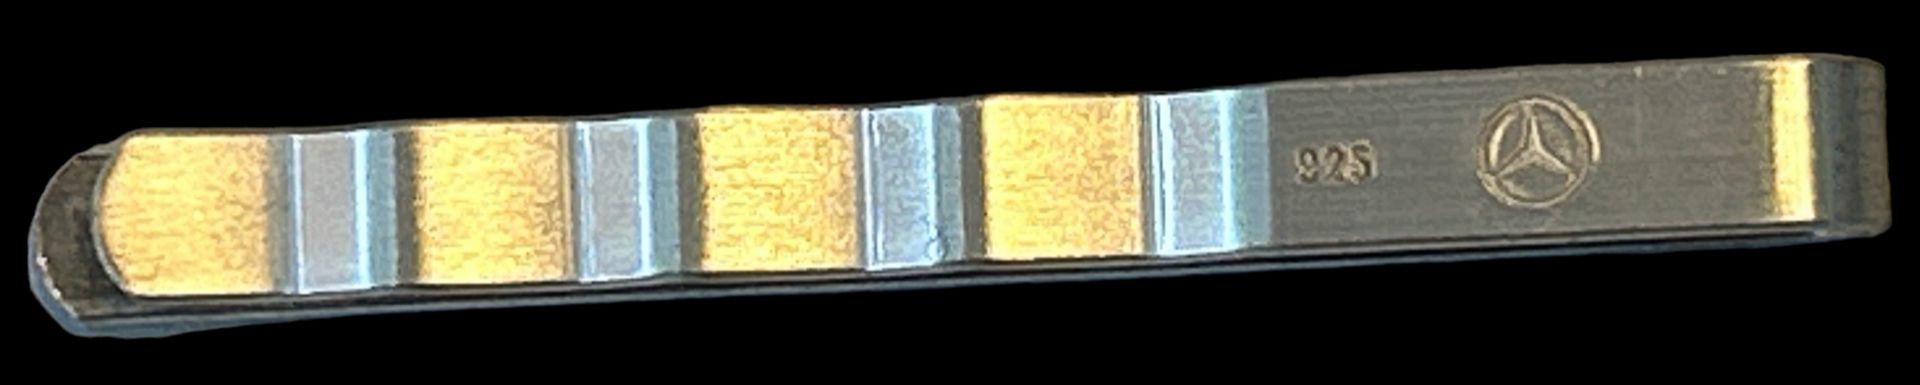 Mercedes Karawattenklammer, Silber-925- - Bild 2 aus 2